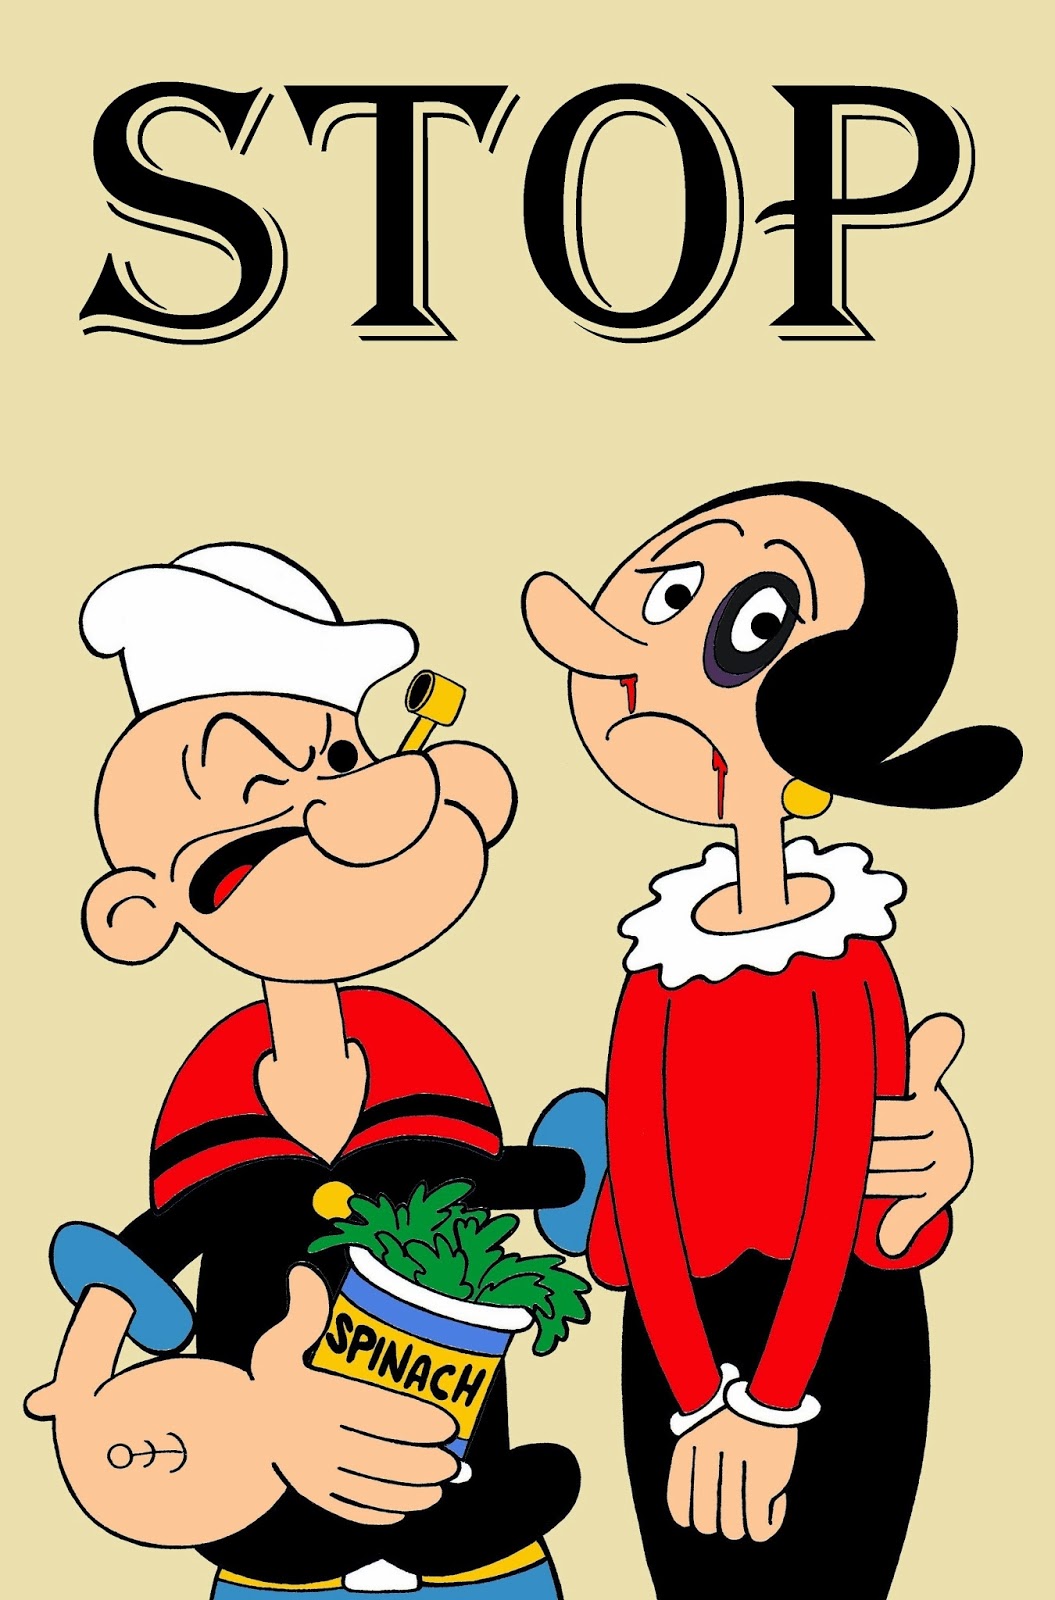 Popeye et Olive